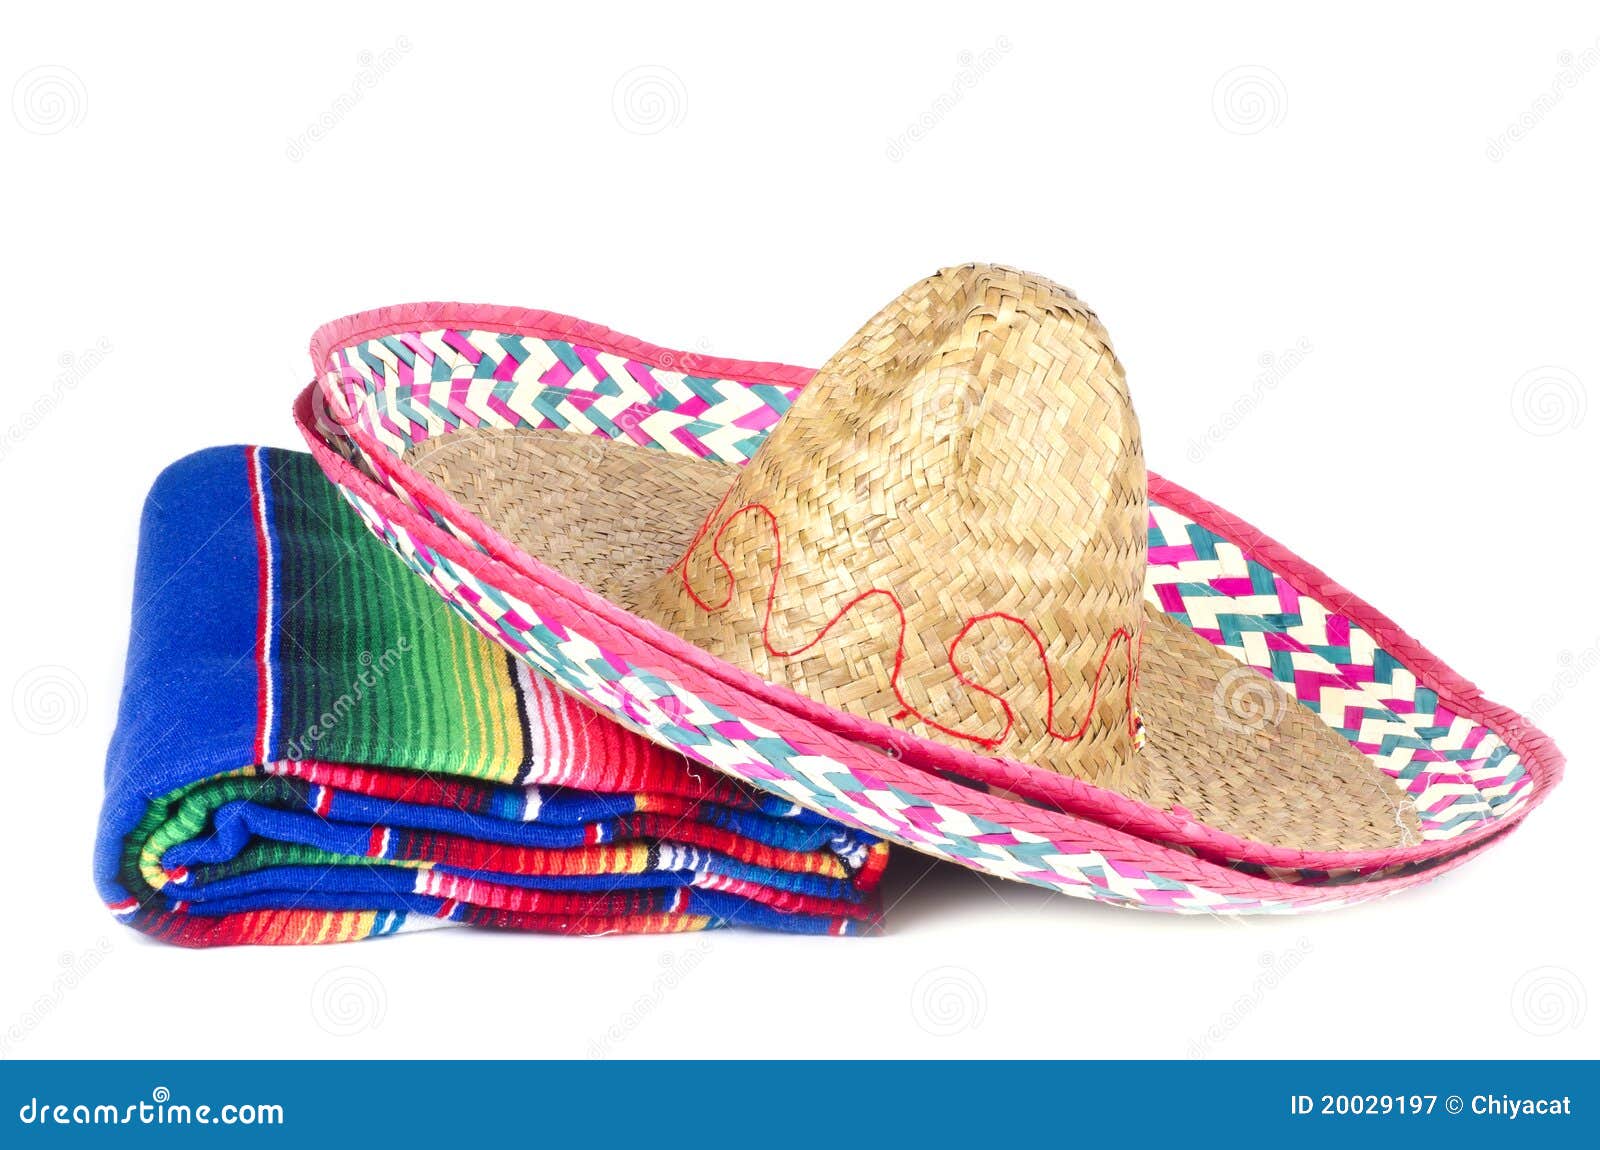 新款夏季墨西哥帽 旅游男女通用墨西哥帽 厂家加工定做草帽批发-阿里巴巴